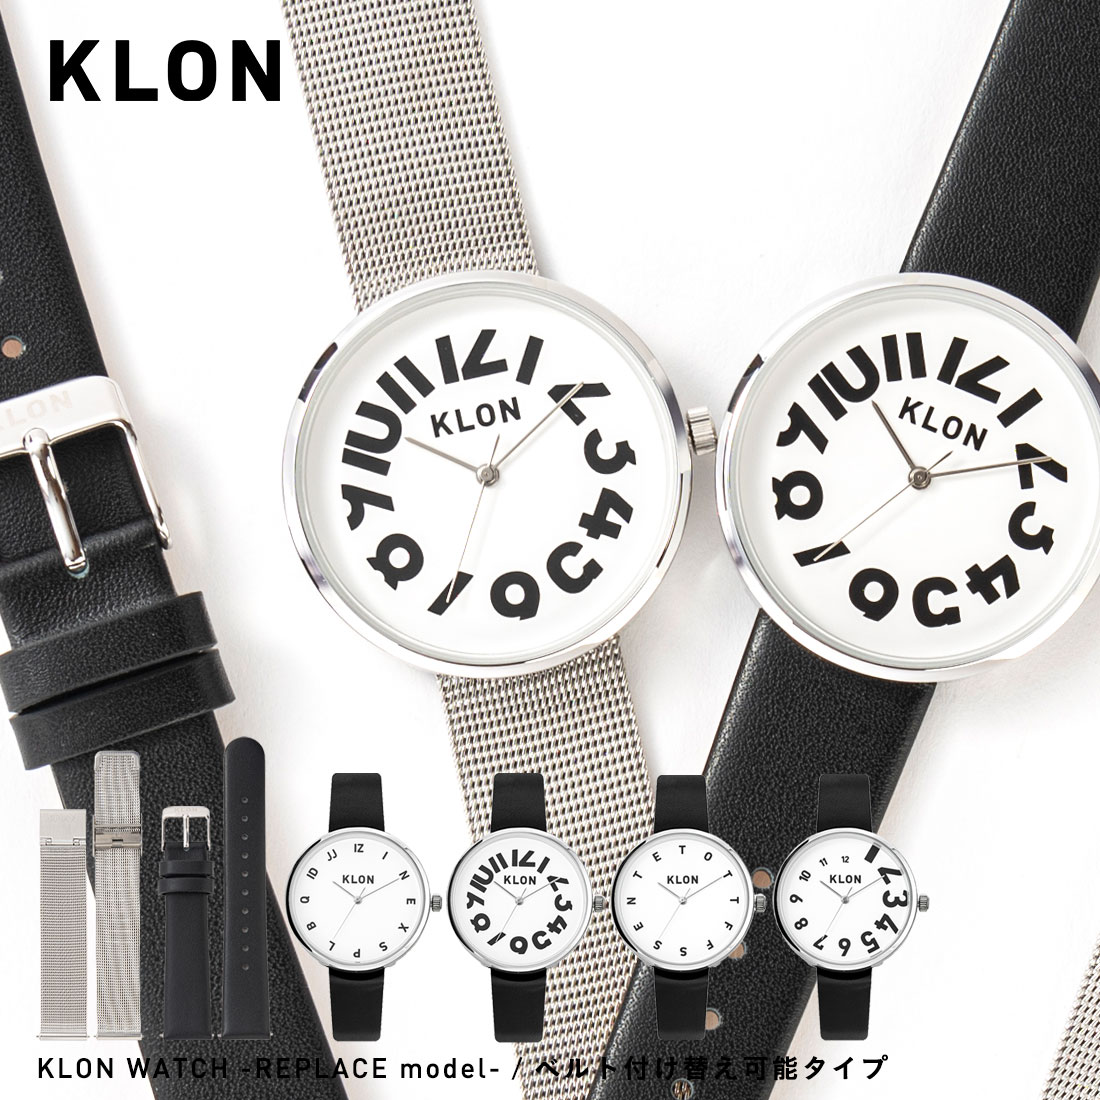  腕時計 ペア ペアウォッチ モノトーン お揃い ブランド ステンレス レザー ベルト シンプル ペア腕時計 カップル 記念日 プレゼント 大人 ギフト オールジェンダー メンズ レディース KLON WATCH -REPLACE model-